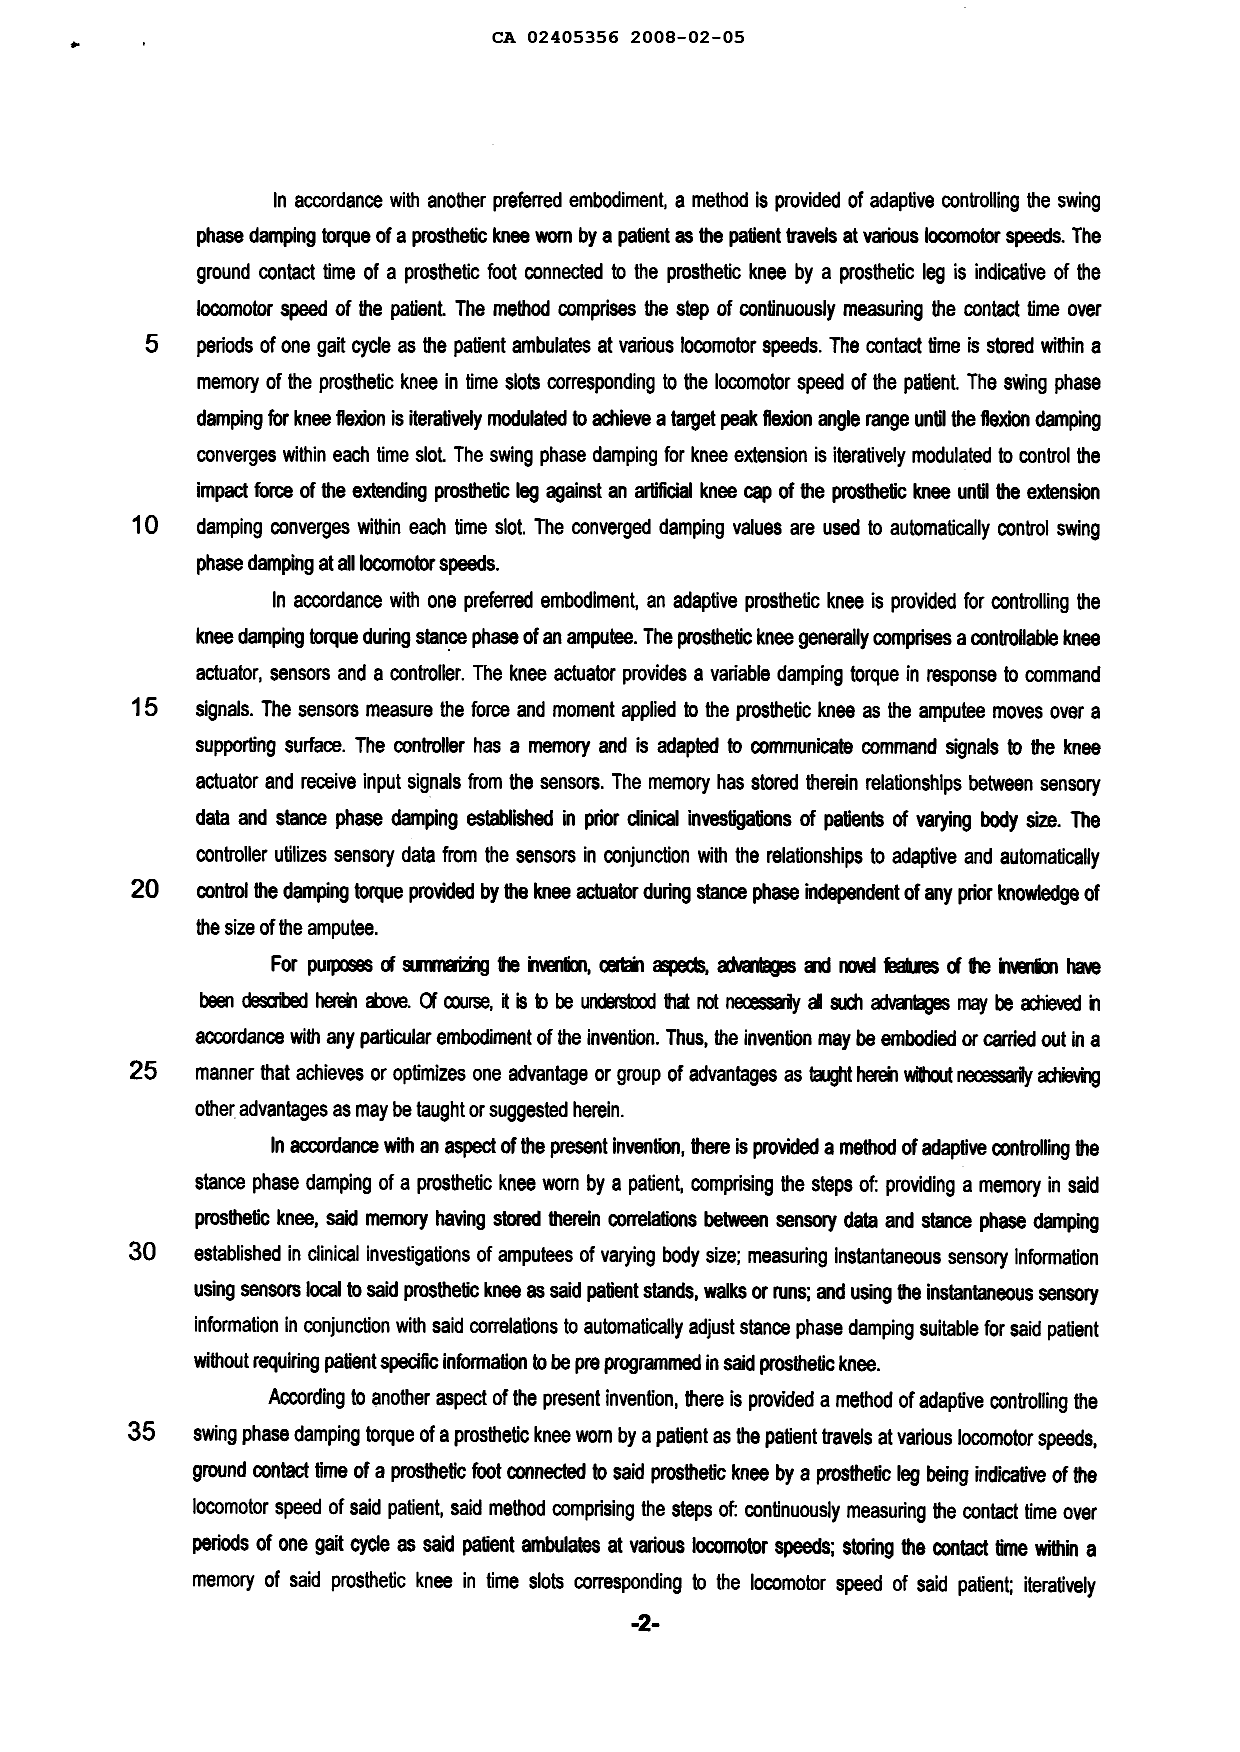 Canadian Patent Document 2405356. Description 20100618. Image 2 of 31